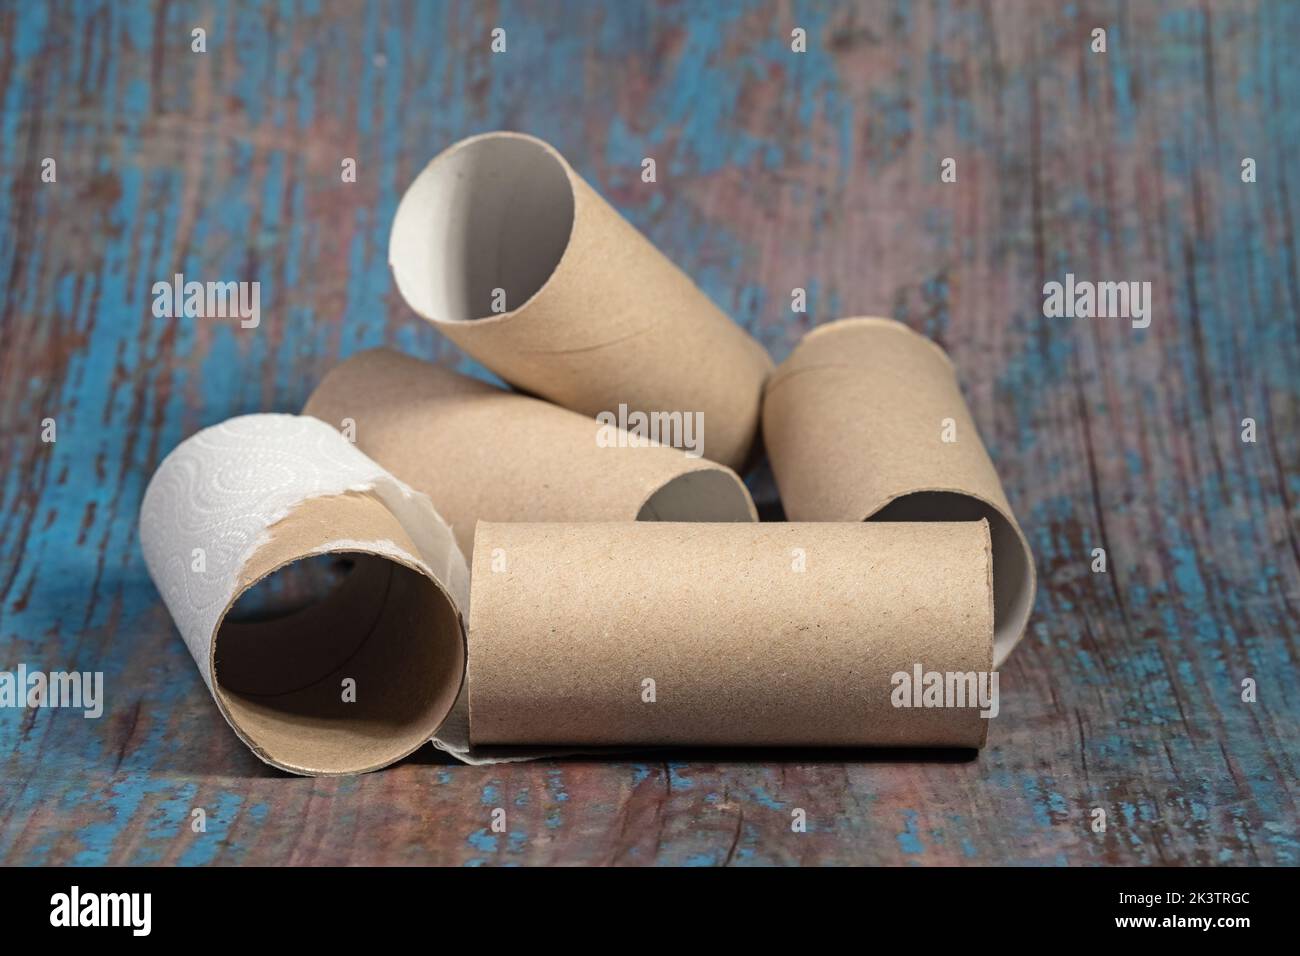 Gros plan des rouleaux de papier hygiénique vides Banque D'Images